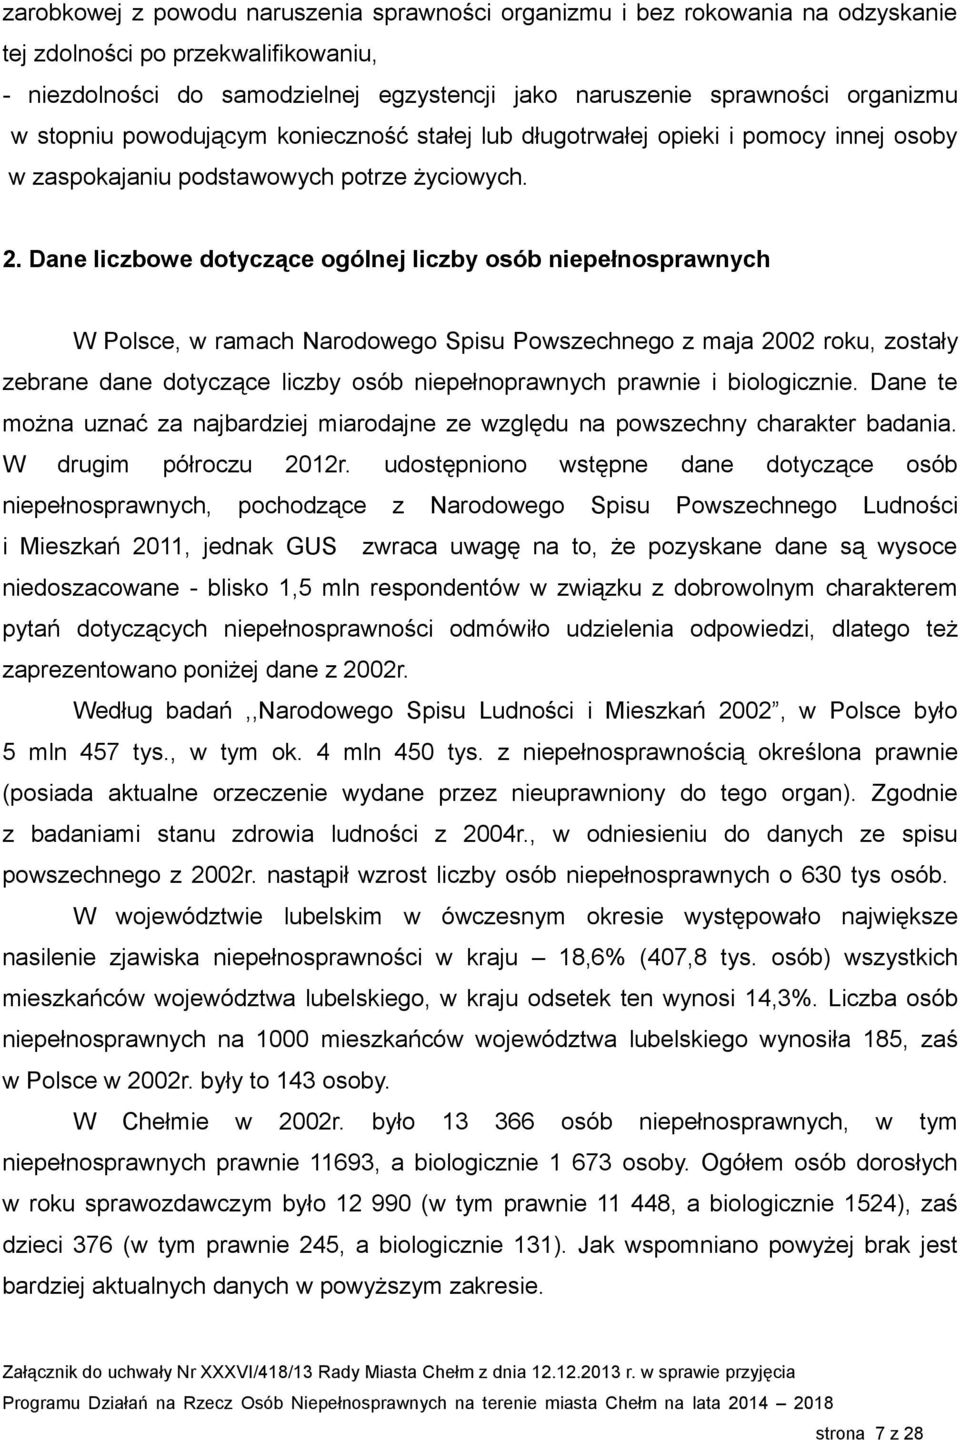 Dane liczbowe dotyczące ogólnej liczby osób niepełnosprawnych W Polsce, w ramach Narodowego Spisu Powszechnego z maja 2002 roku, zostały zebrane dane dotyczące liczby osób niepełnoprawnych prawnie i